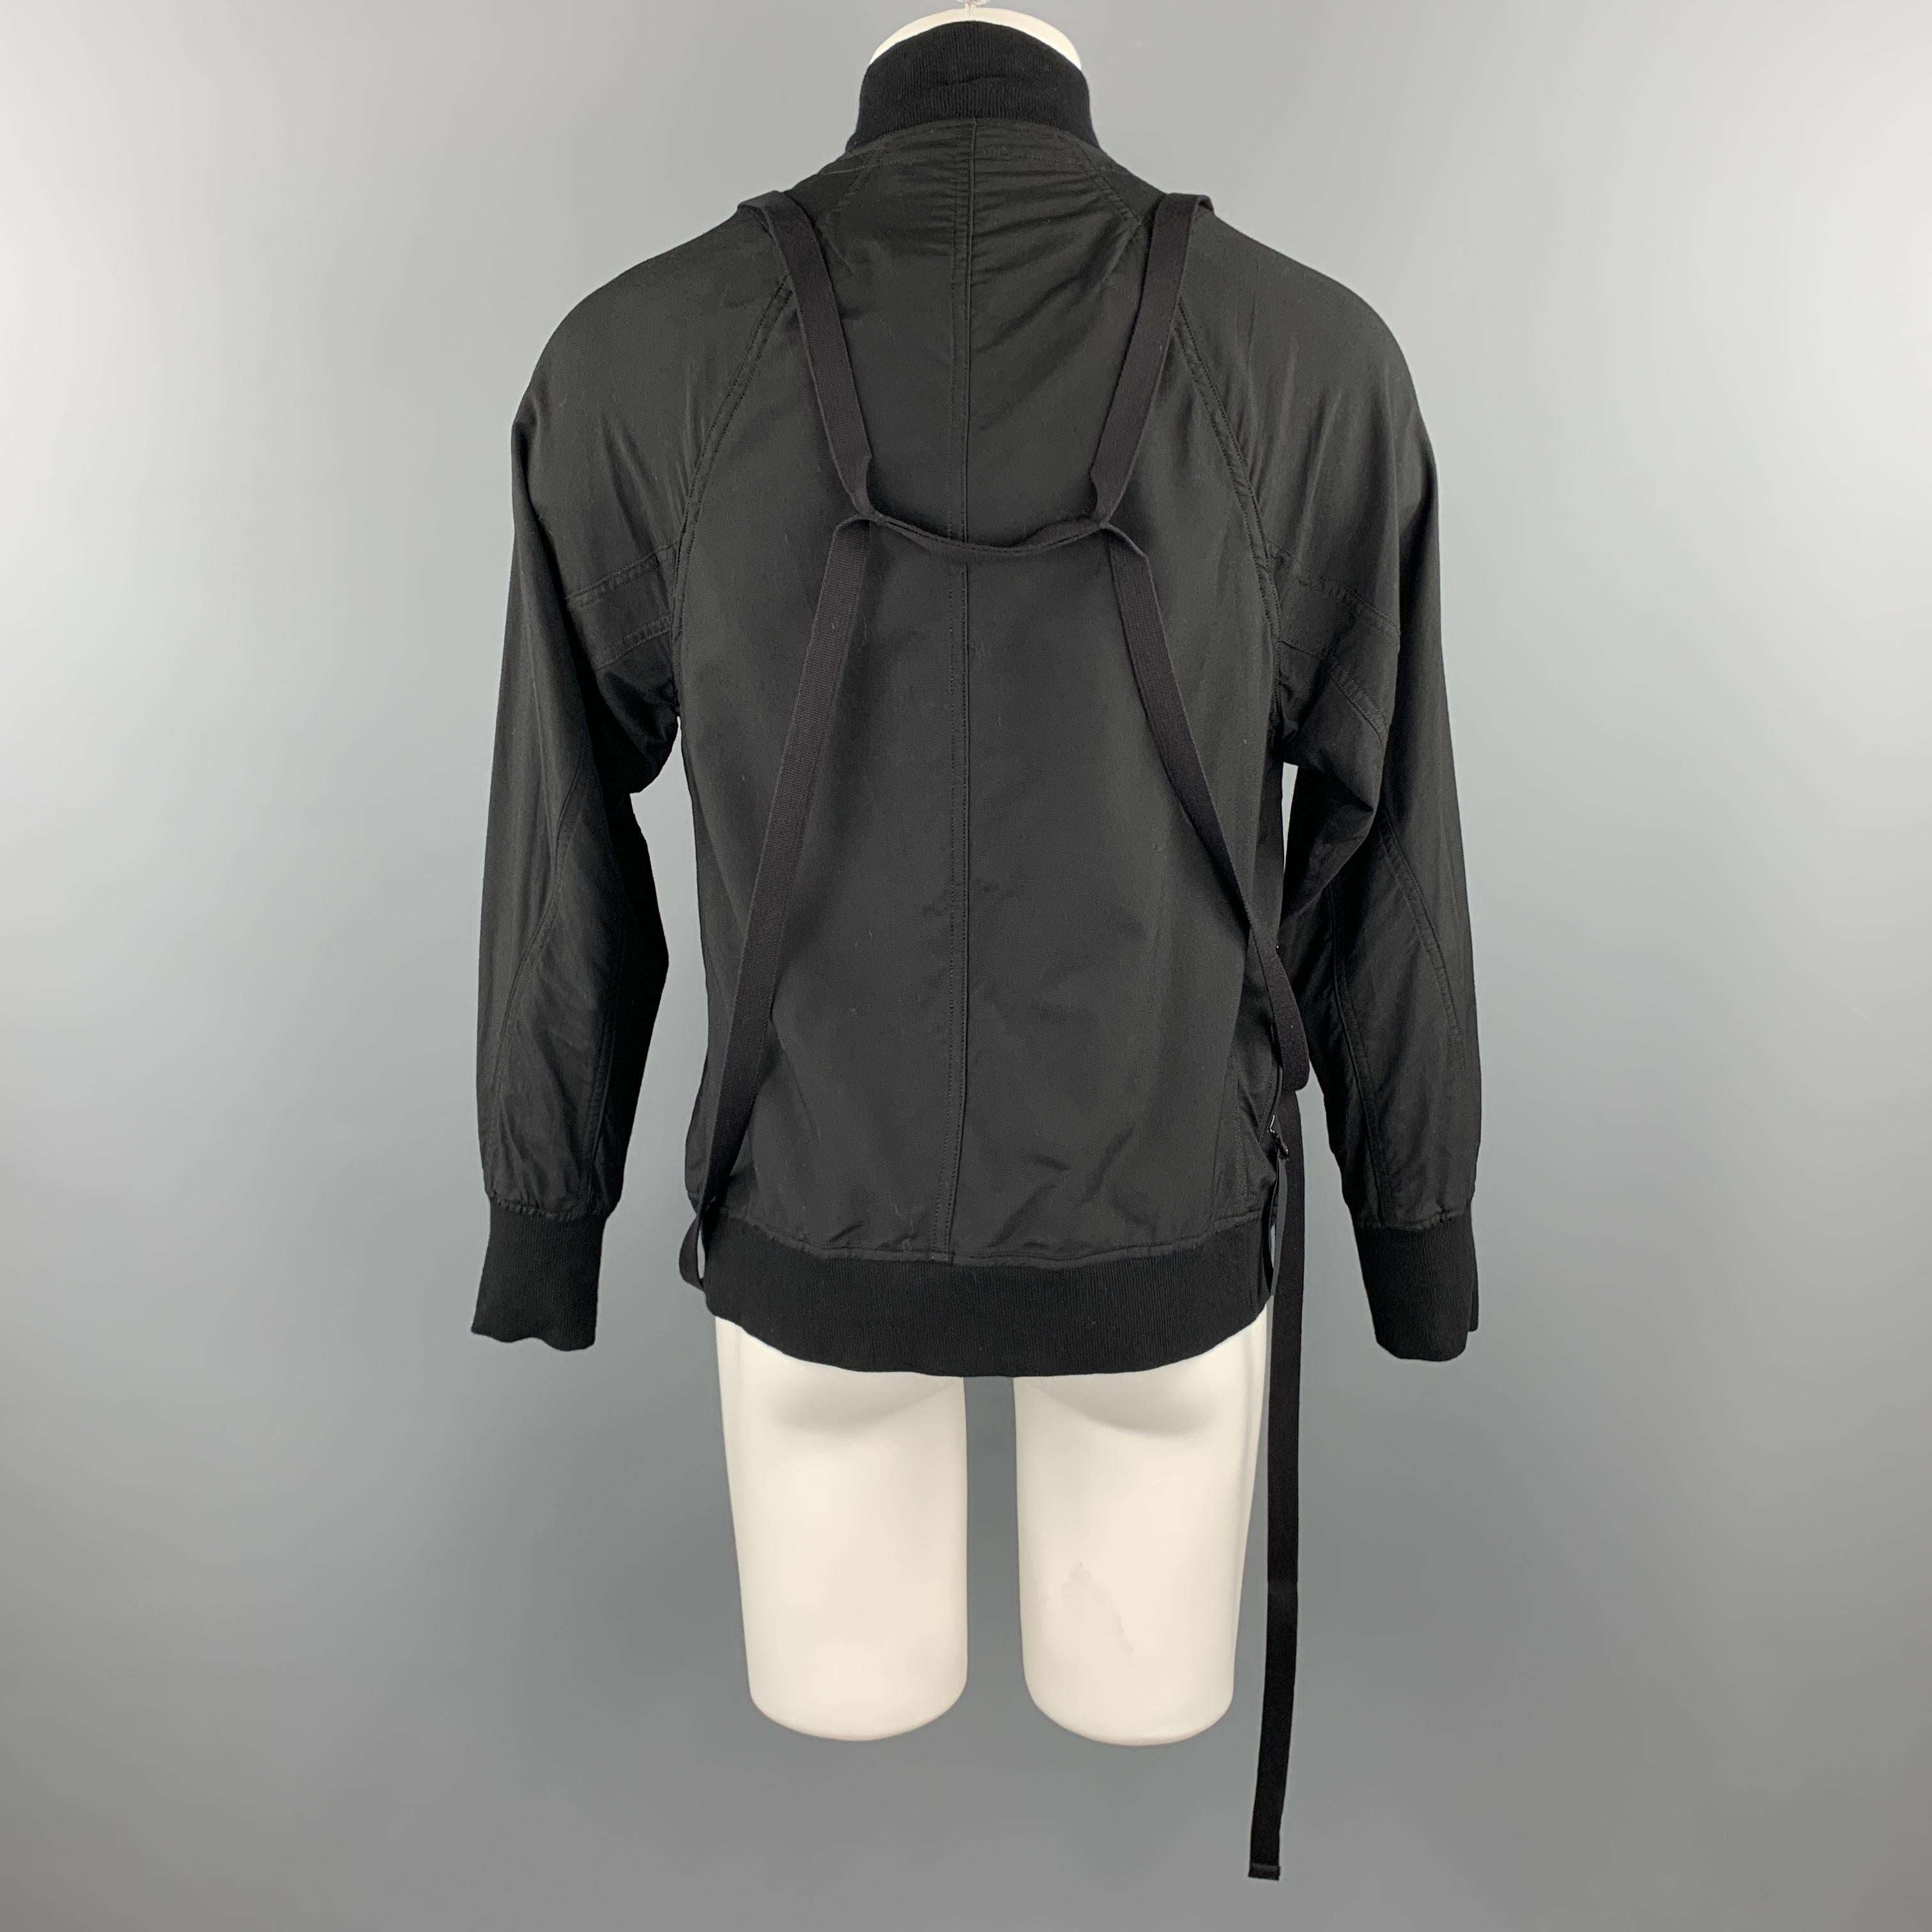 JULIUS_7 S/S 18 Size M Black Cotton / Nylon Zip Up A81 Harness Jacket 2